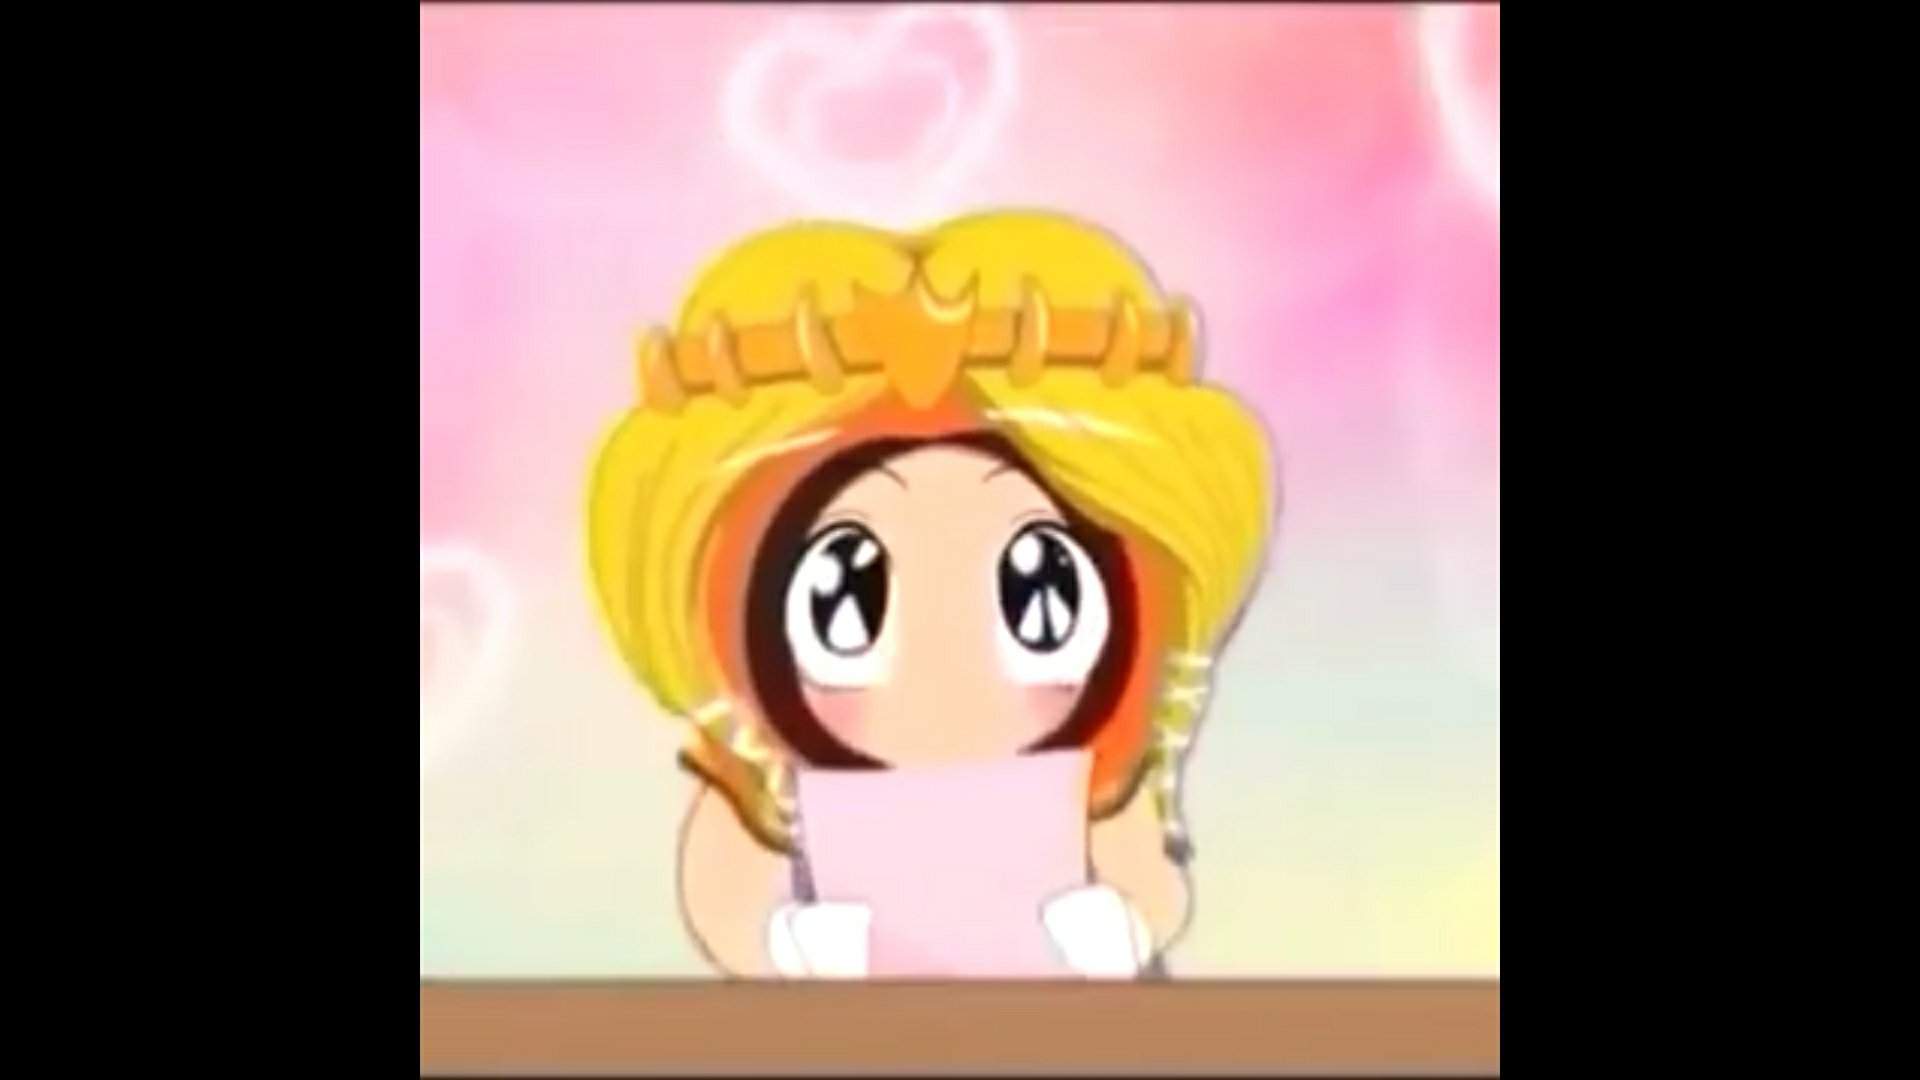 Anime Princess Kenny being Anime Princess Kenny. UwU | South Park Amino